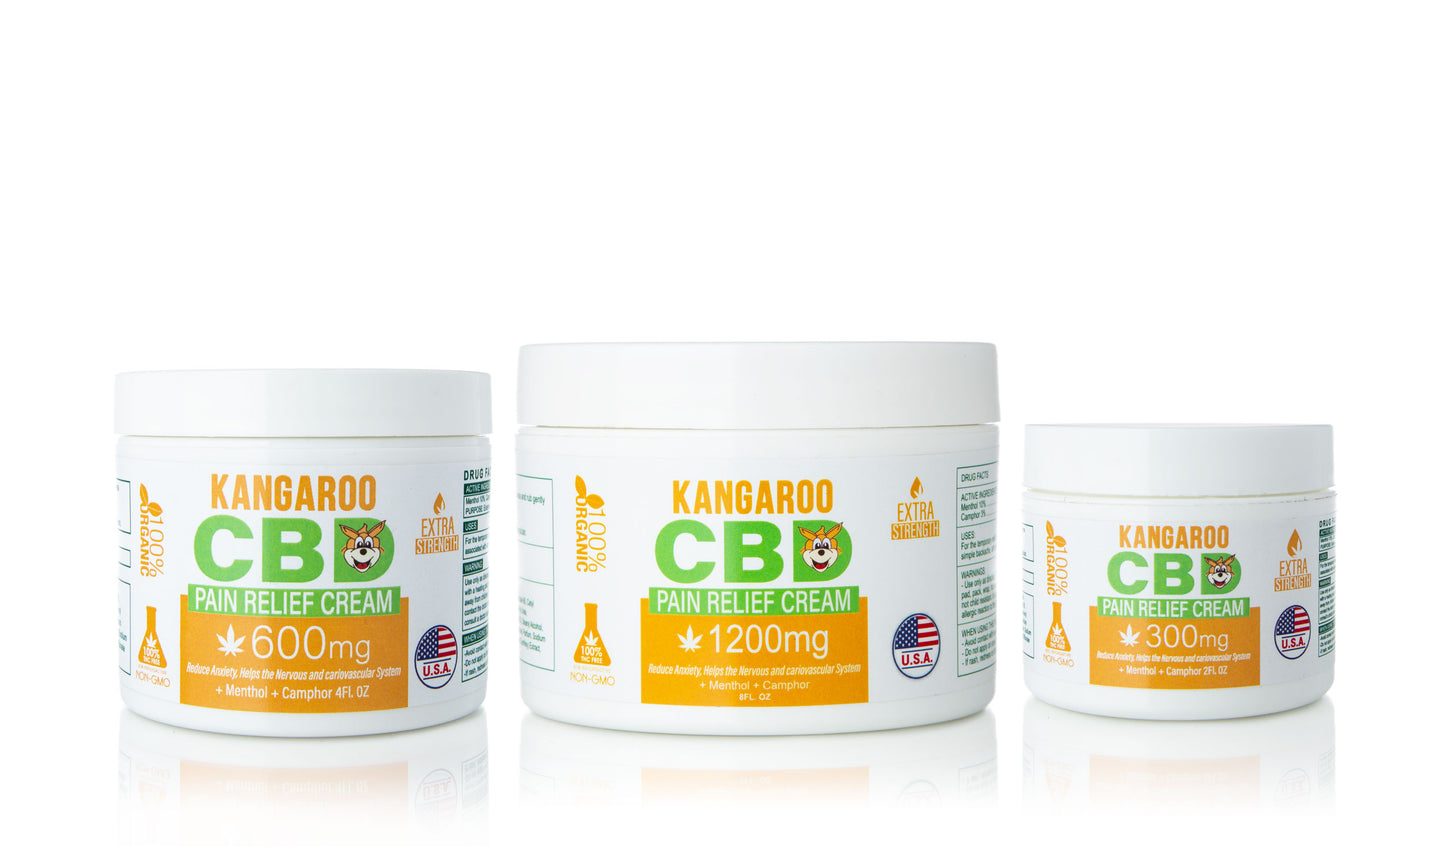 Kangaroo CBD Pain Relief Creams